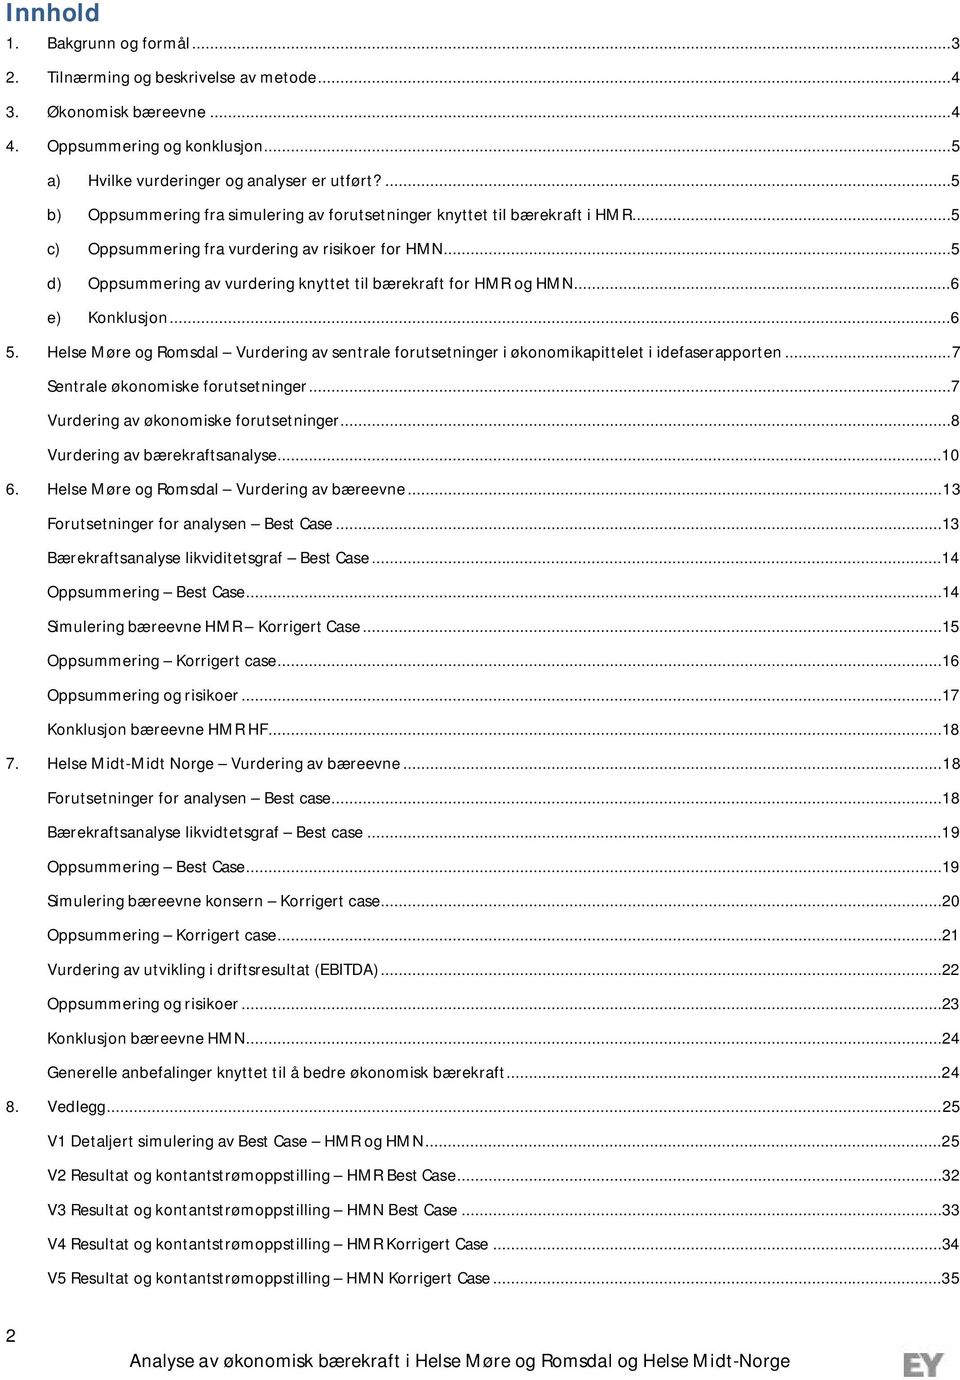 ..5 d) Oppsummering av vurdering knyttet til bærekraft for HMR og HMN...6 e) Konklusjon...6 5. Helse Møre og Romsdal Vurdering av sentrale forutsetninger i økonomikapittelet i idefaserapporten.